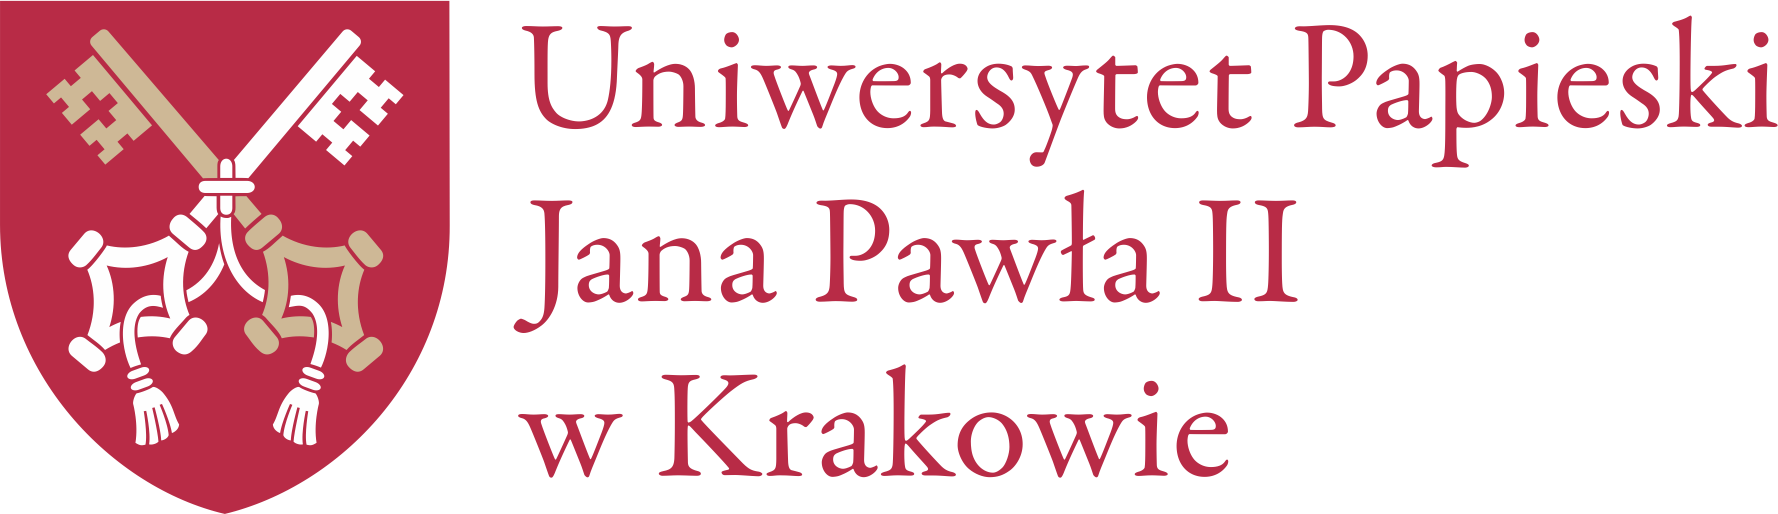 uniwersytet_papieski_jana_pawla_ii_w_krakowie_ooo.png